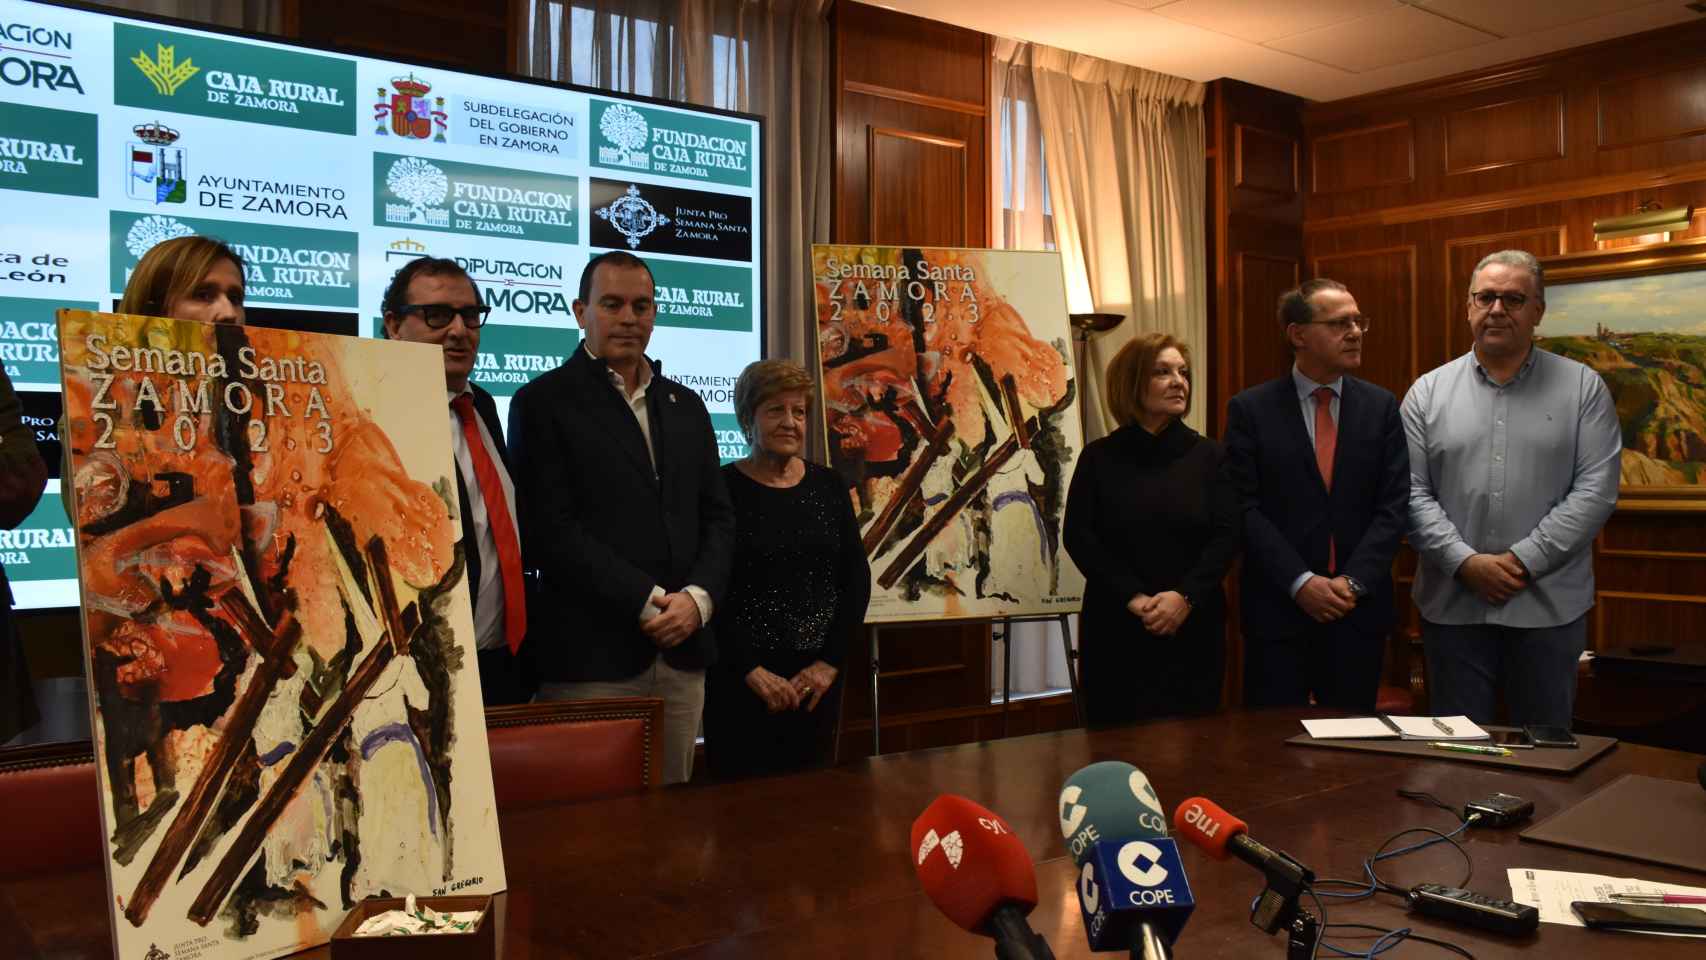 Presentación del cartel de la Semana Santa de Zamora